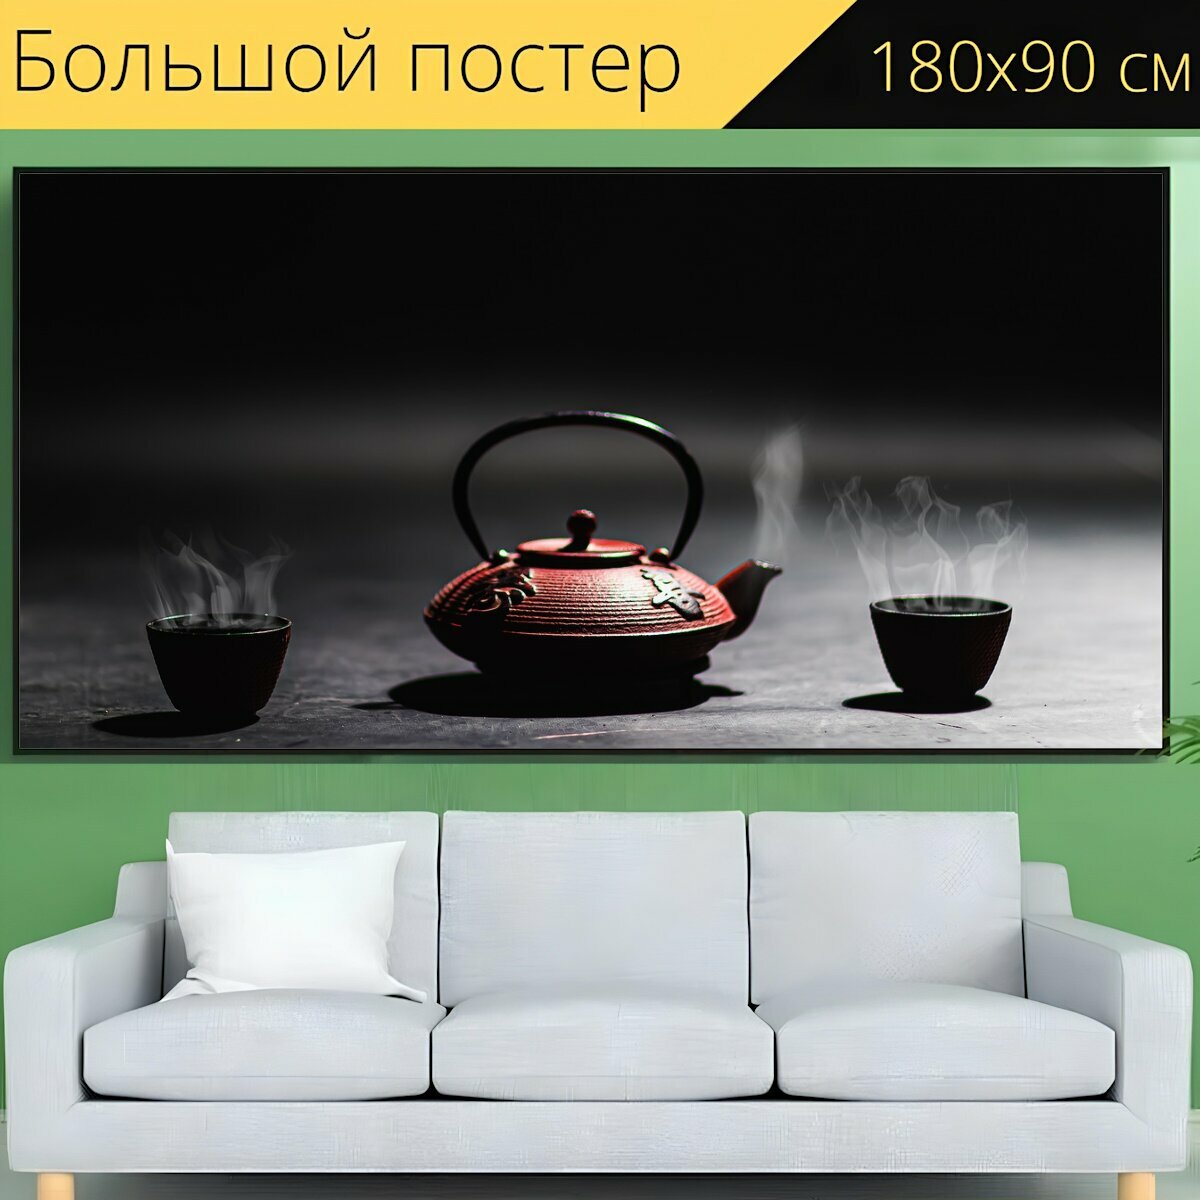 Большой постер "Чайник, чай, традиционный" 180 x 90 см. для интерьера